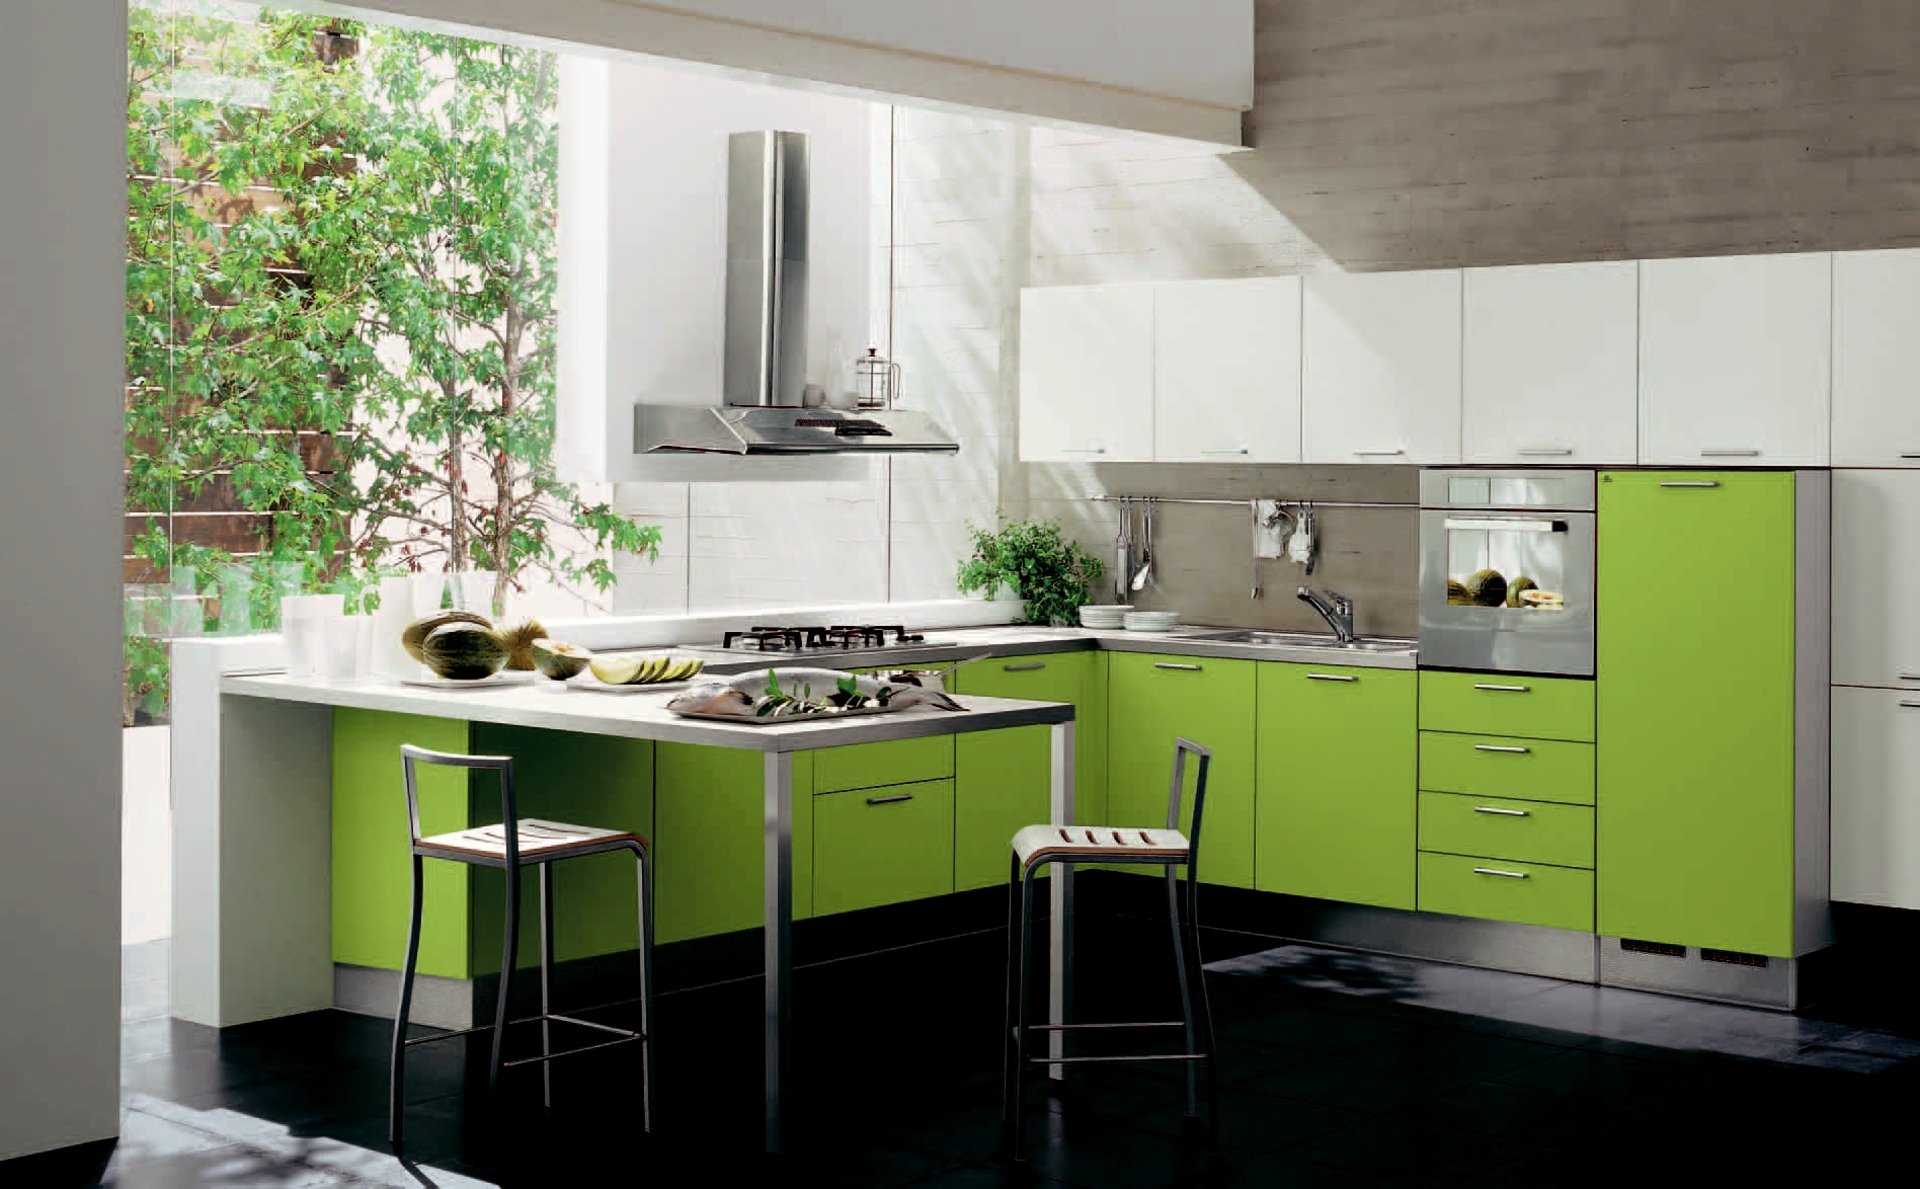 Кухни така. Egger Фьорд зеленый кухня. Красивый кухонный гарнитур. Кухня зеленого цвета. Кухня в зеленых тонах.